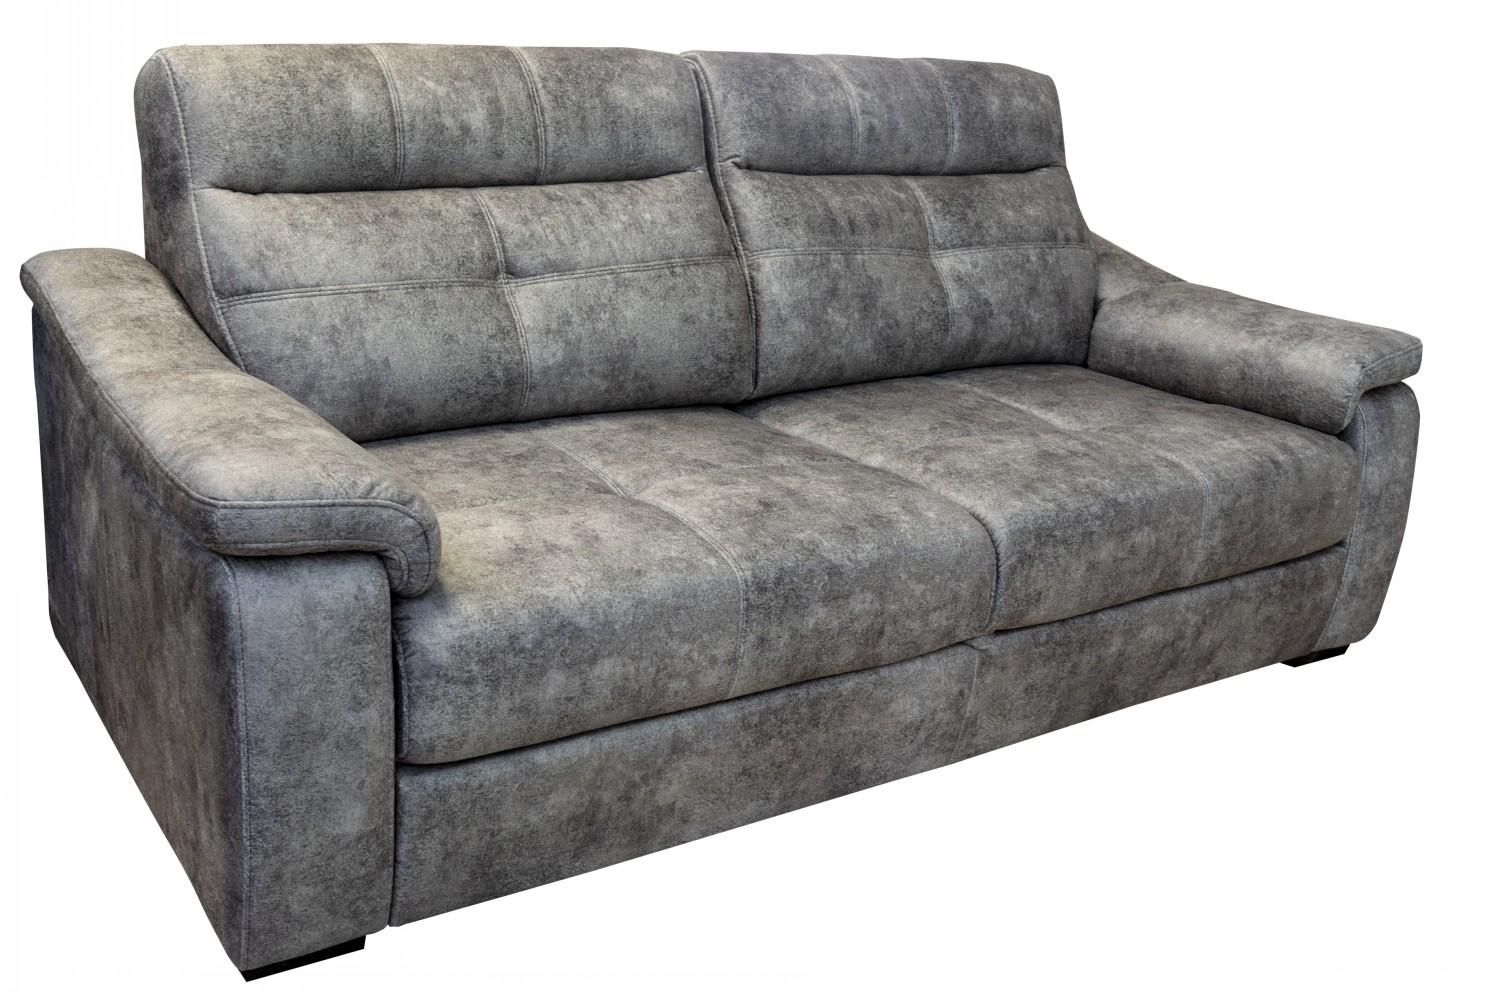 3-х местный диван «Барселона 2» (3m) купить в интернет-магазине Пинскдрев (Казахстан) - цены, фото, размеры